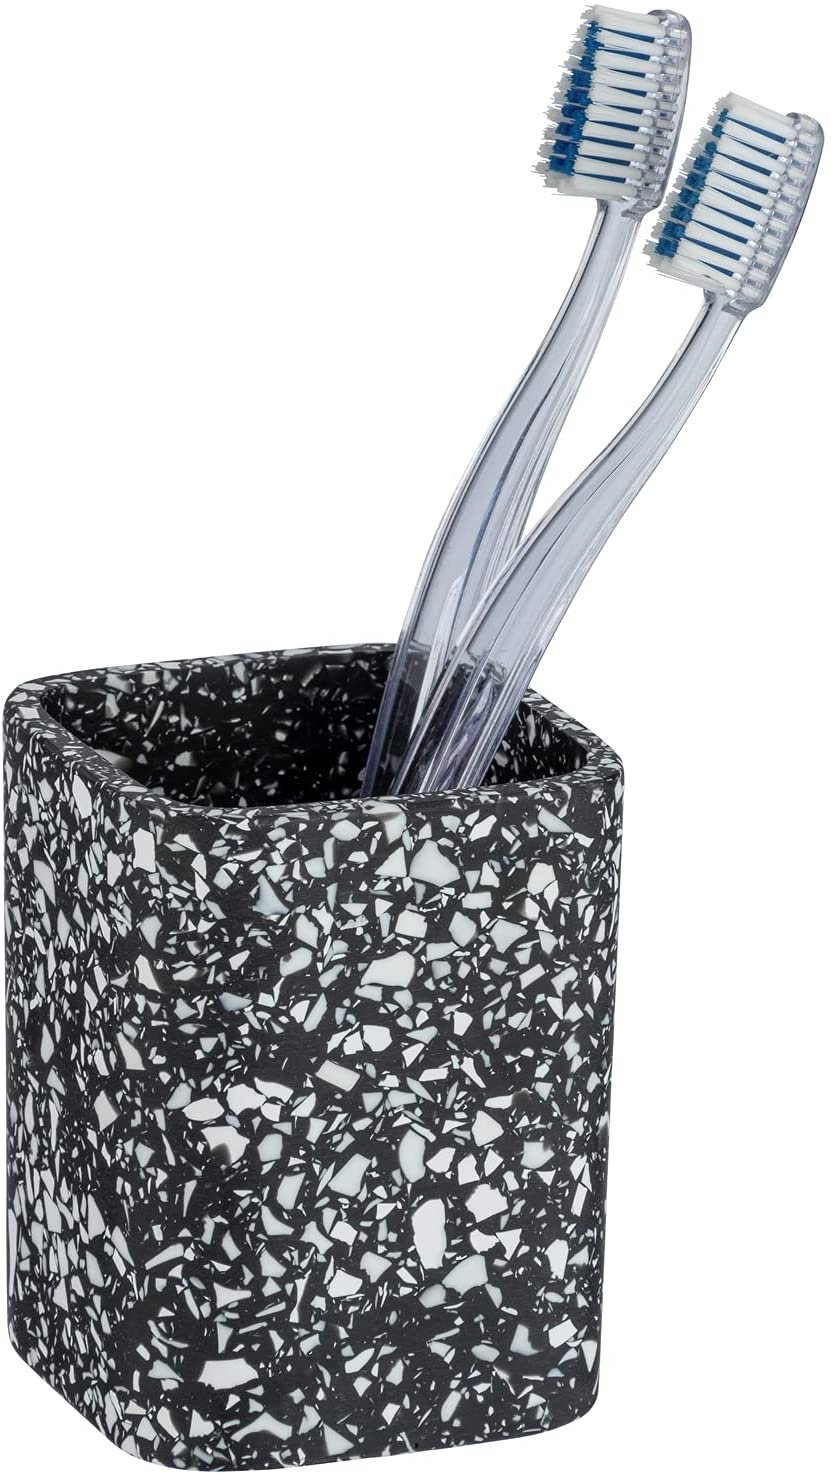 Zahnputzbecher Terrazzo in Mosaik-Optik, edler Zahnbürstenhalter für Zahnpflegeartikel, Make-Up Pinsel Aufbewahrung, außergewöhnliches Badaccessoire aus Polyresin, 8 x 10,5 x 8 cm, Schwarz/Weiß